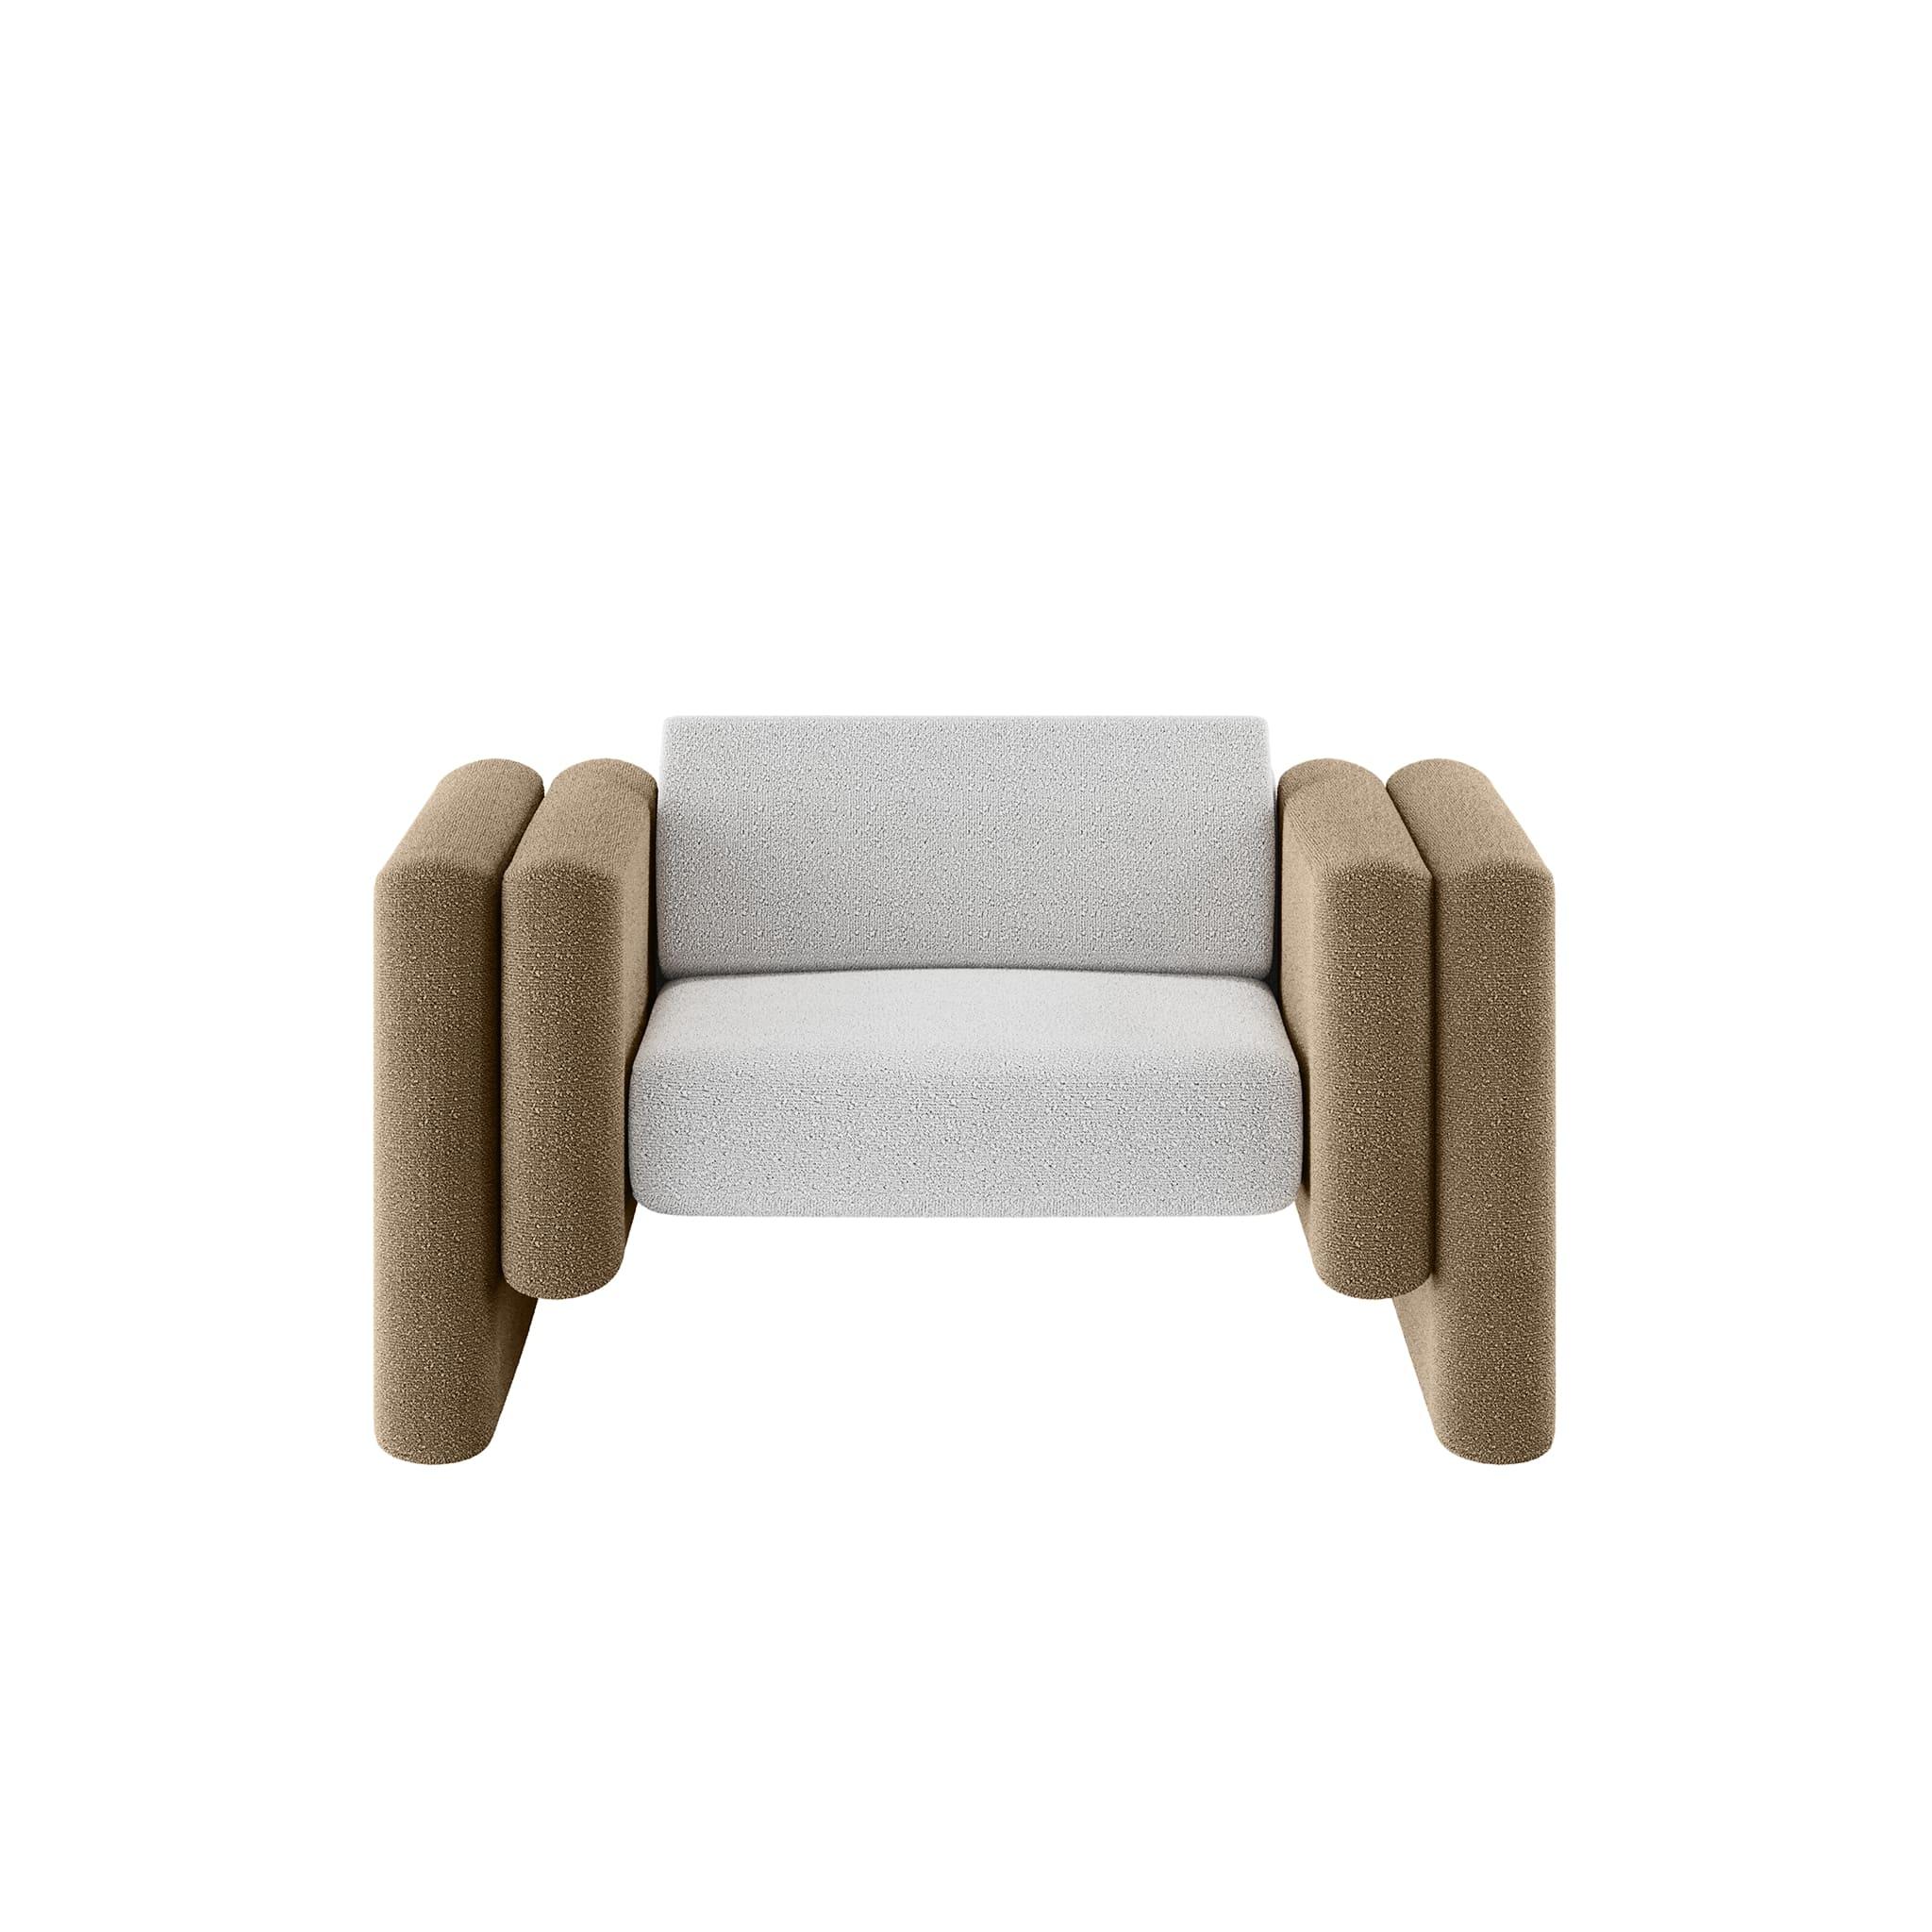 Le fauteuil Lisola Khaki & Whiting est un siège d'extérieur moderne. Une chaise d'extérieur unique créée par le design le plus raffiné avec des détails délicats qui en font une authentique pièce de design moderne pour un espace extérieur. Le